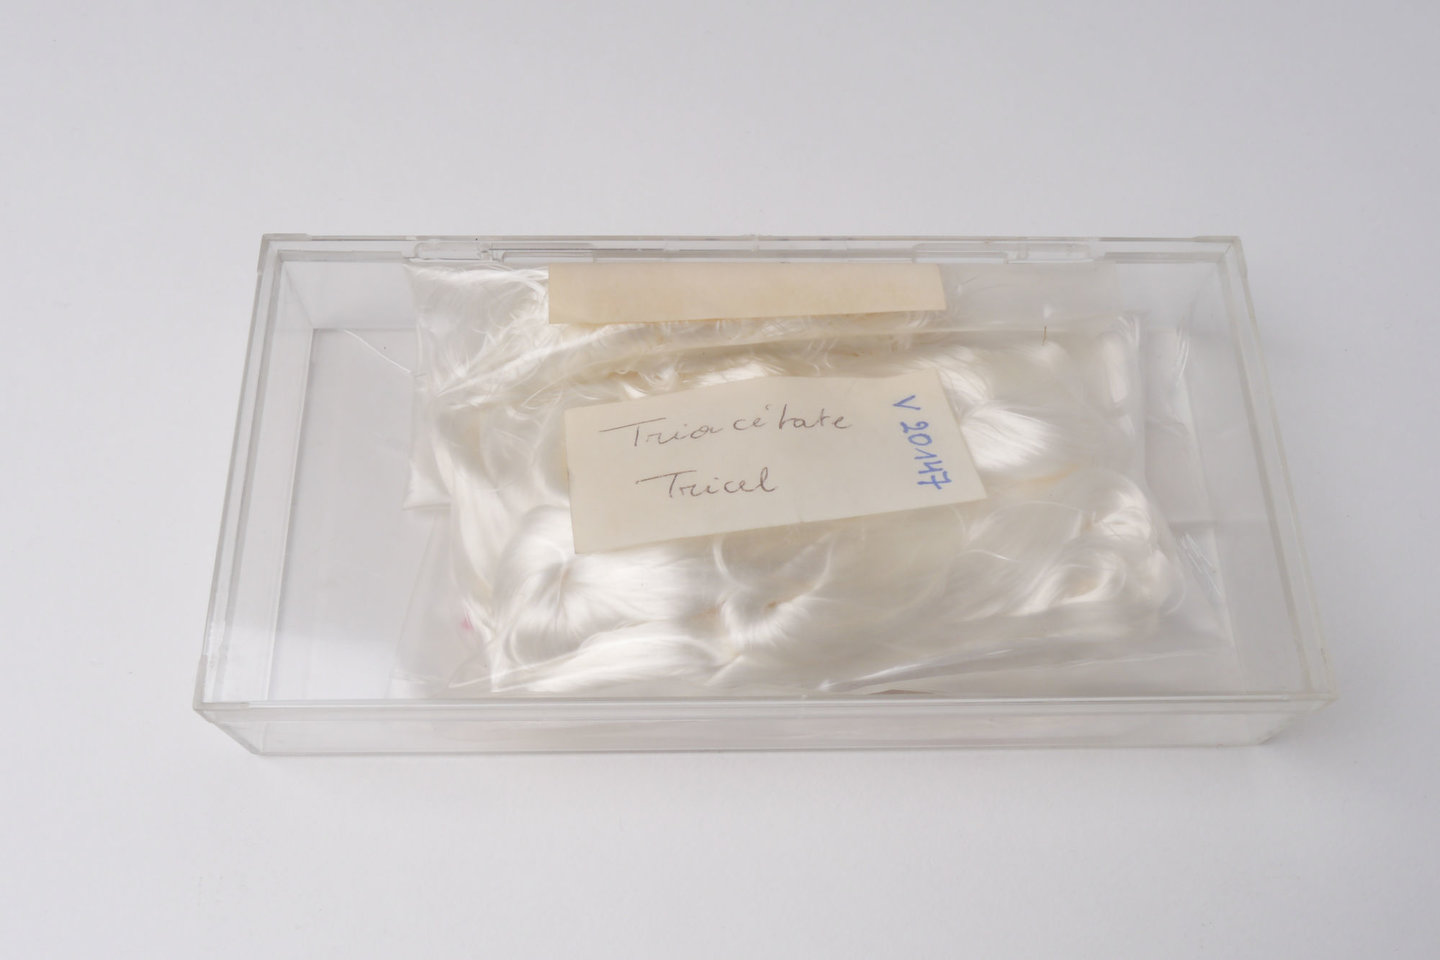 Staal van acetaatvezels van het type triacetaat uit Japan